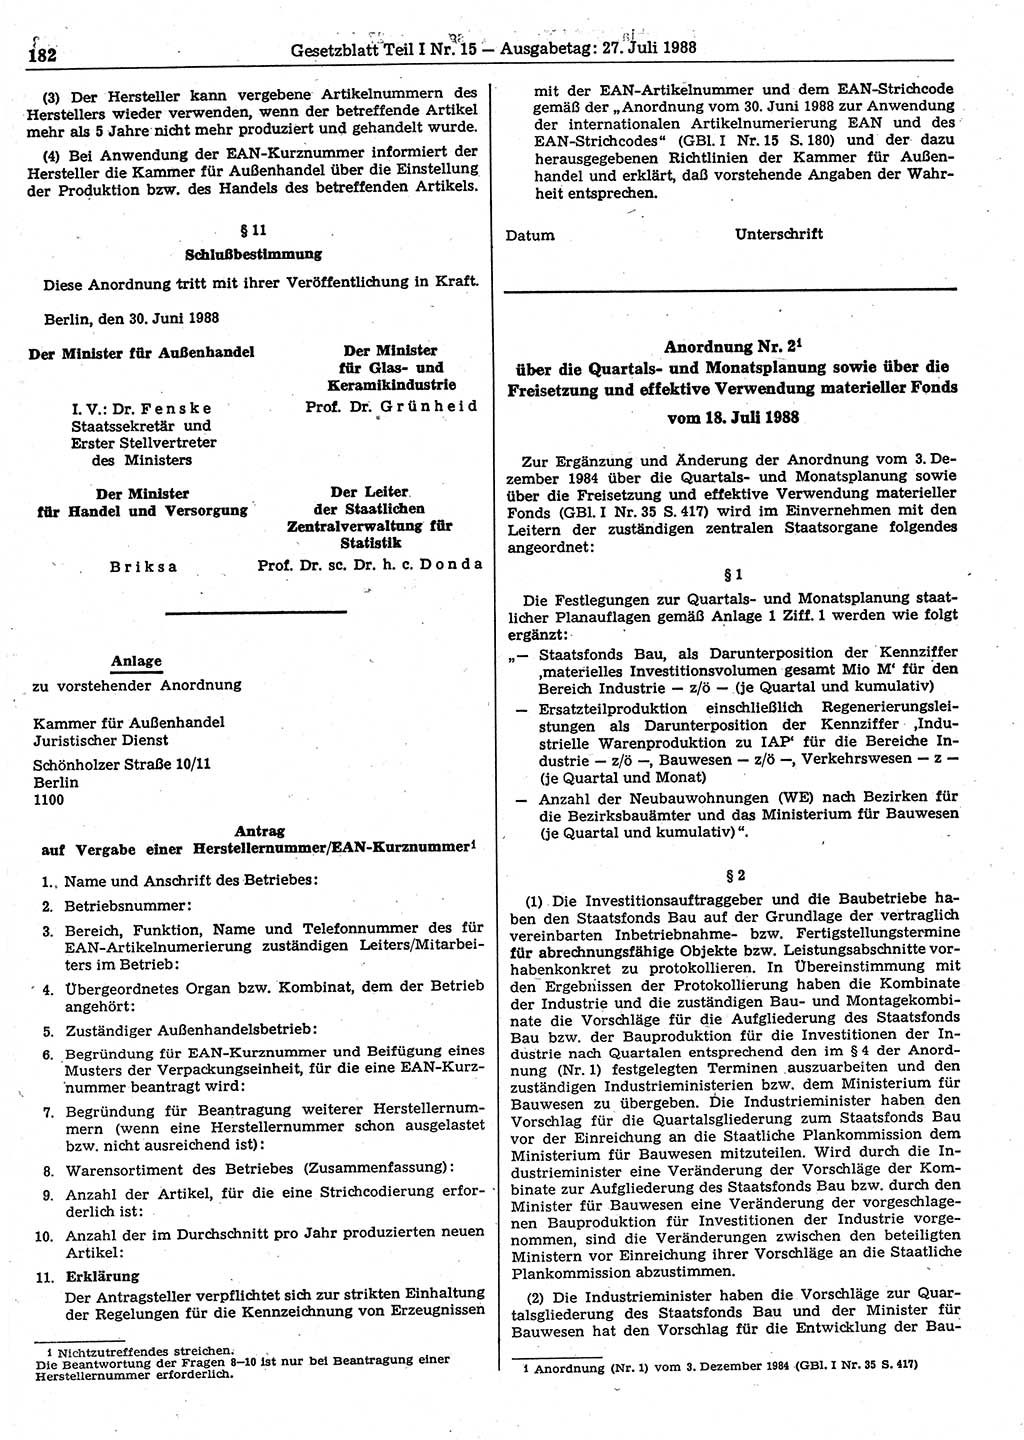 Gesetzblatt (GBl.) der Deutschen Demokratischen Republik (DDR) Teil Ⅰ 1988, Seite 182 (GBl. DDR Ⅰ 1988, S. 182)